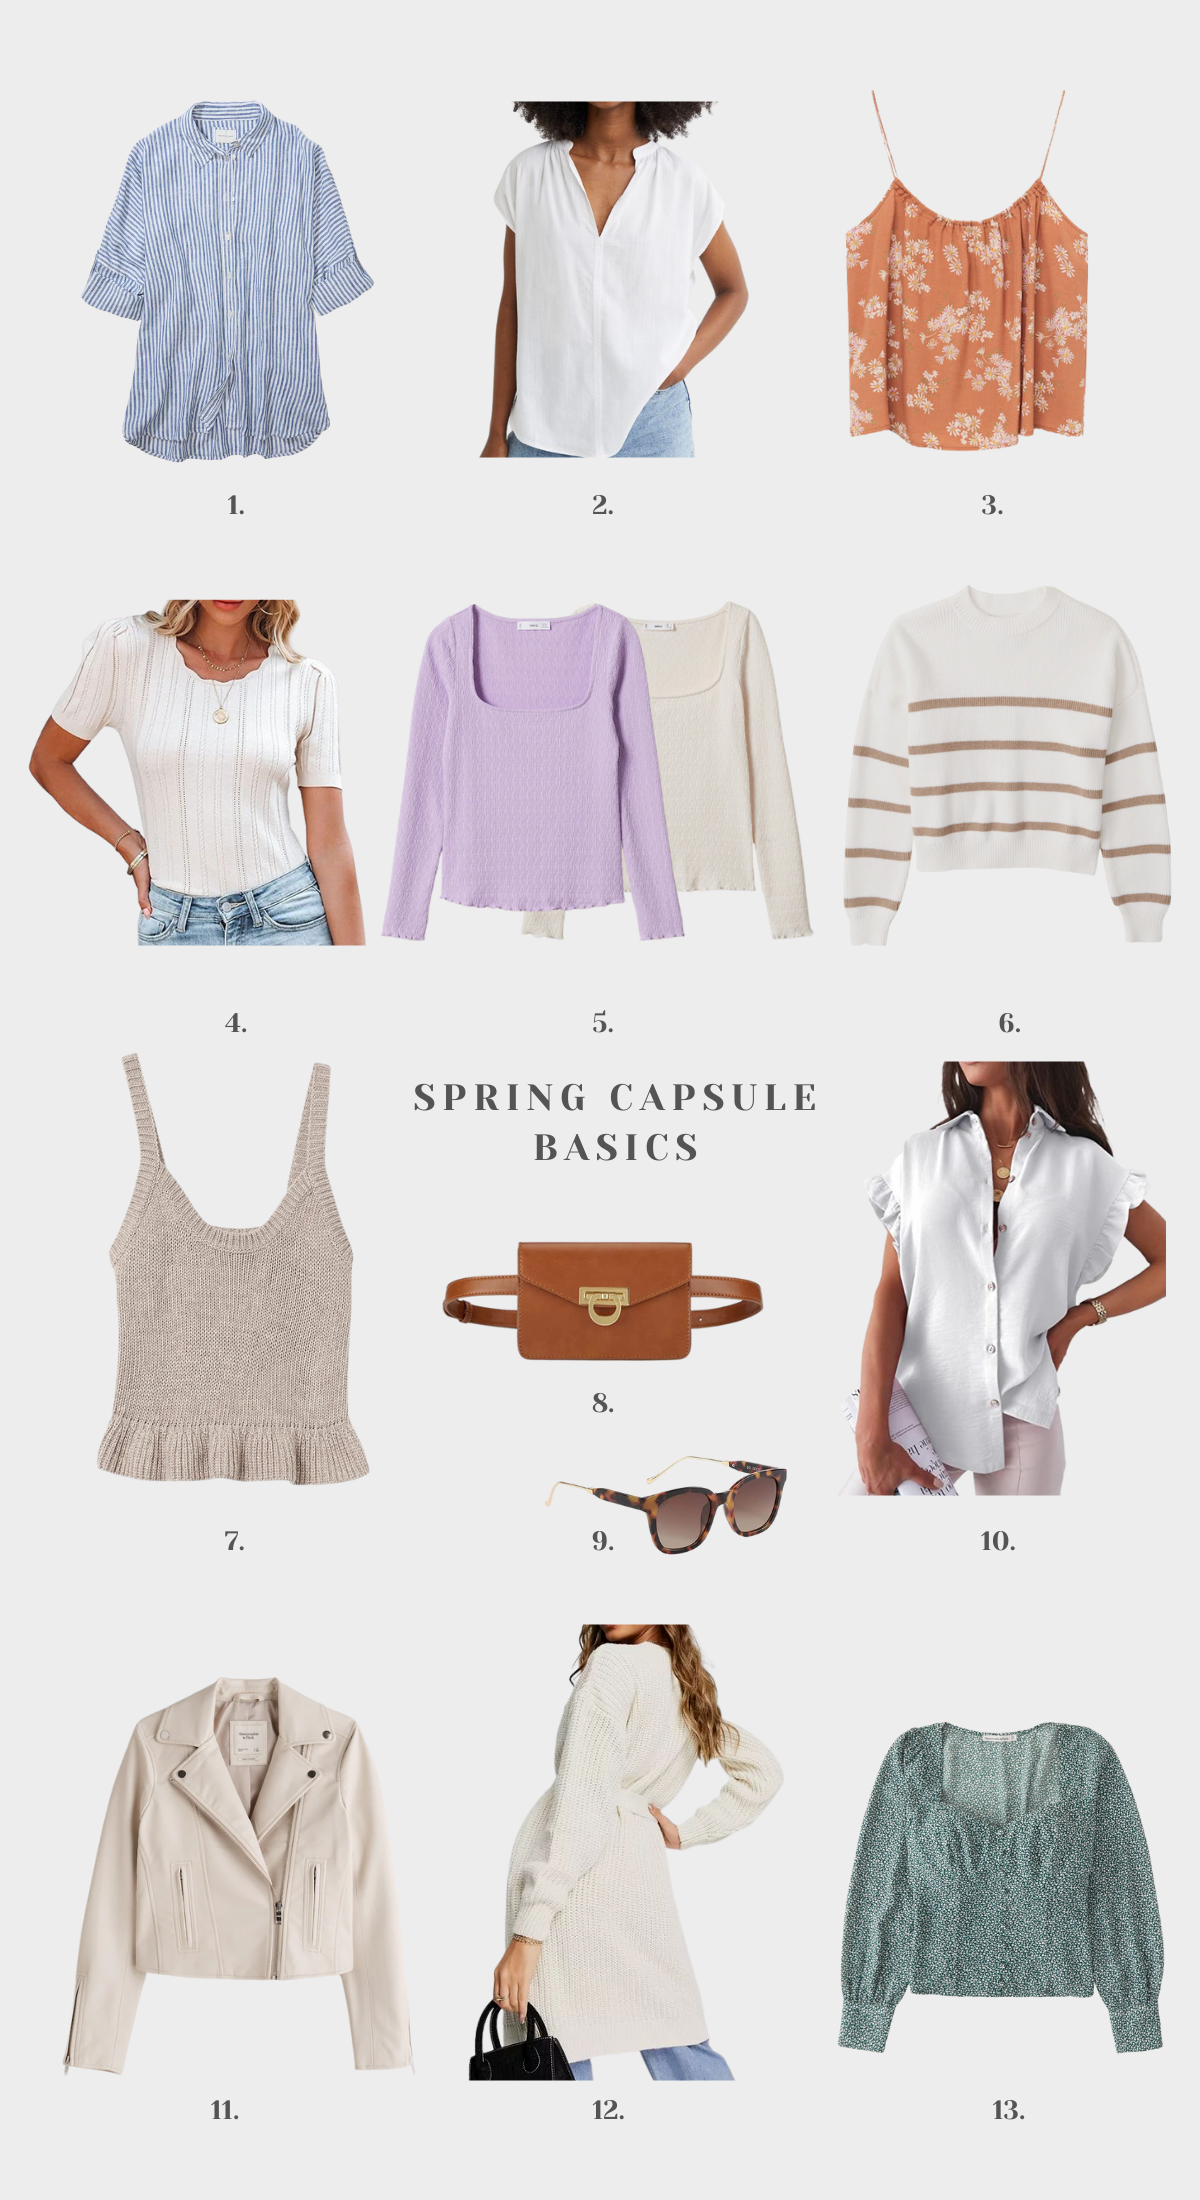 Spring Capsule Wardrobe Basics + The Looks I Wore